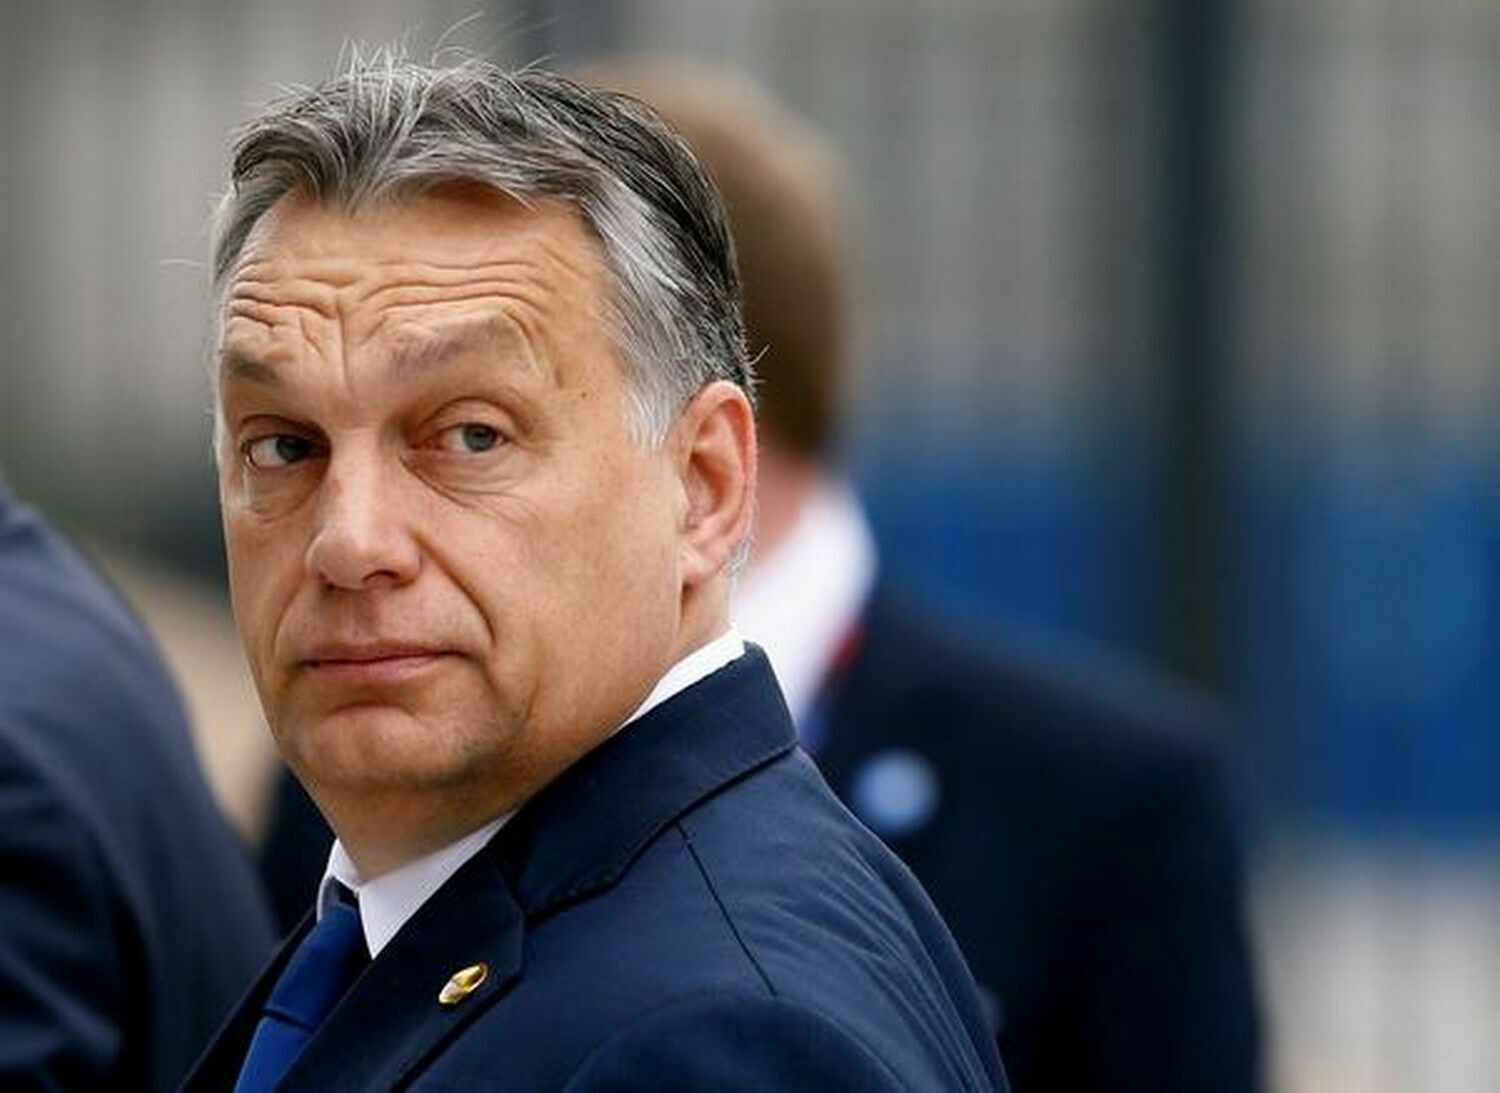 Евросоюз не смог согласовать новый пакет помощи Украине из-за позиции Орбана